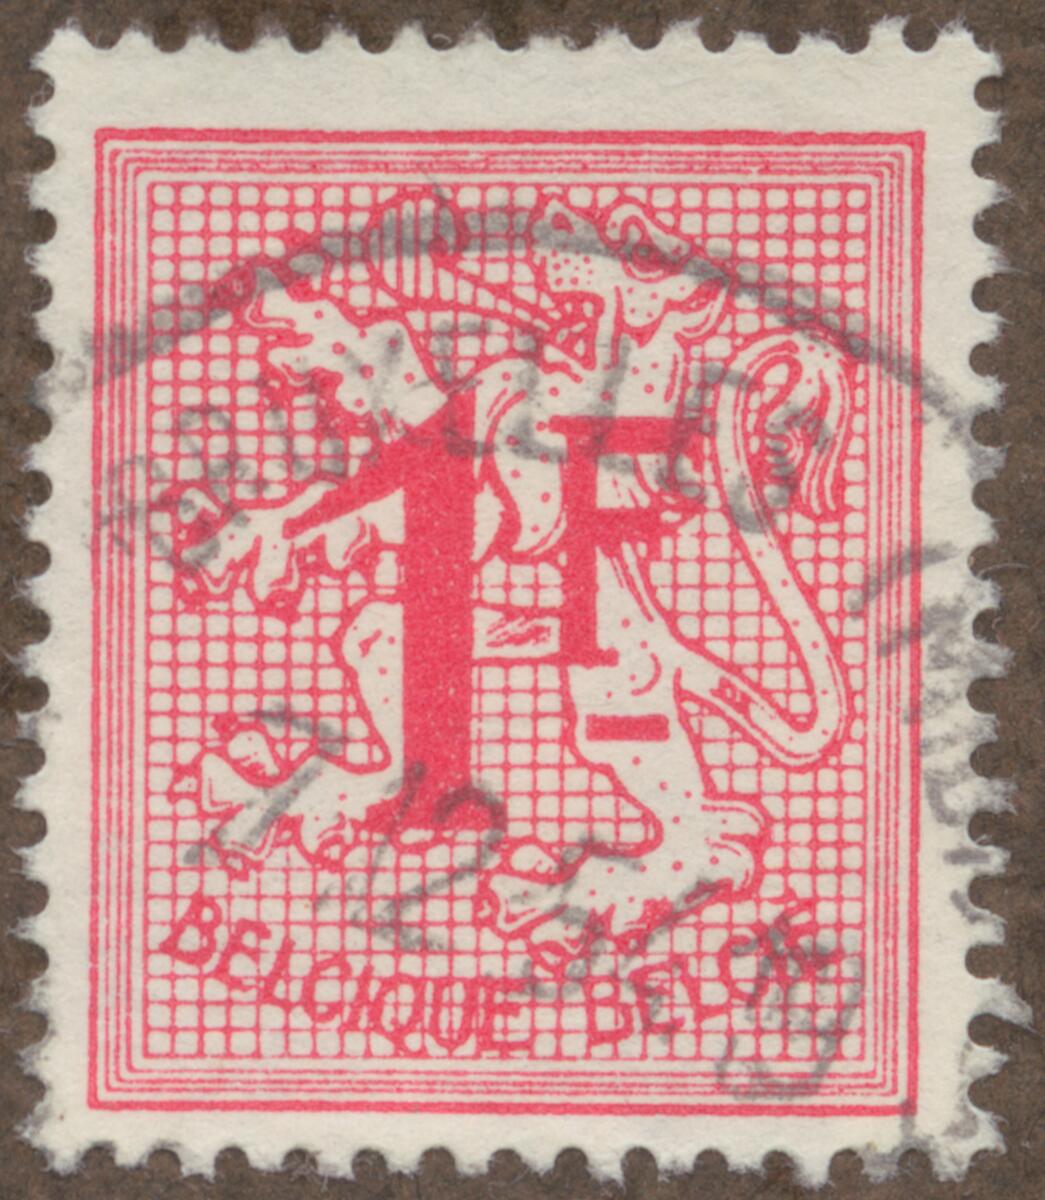 Frimärke ur Gösta Bodmans filatelistiska motivsamling, påbörjad 1950.
Frimärke från Belgien, 1950. Motiv av Belgiens Vapen- lejon